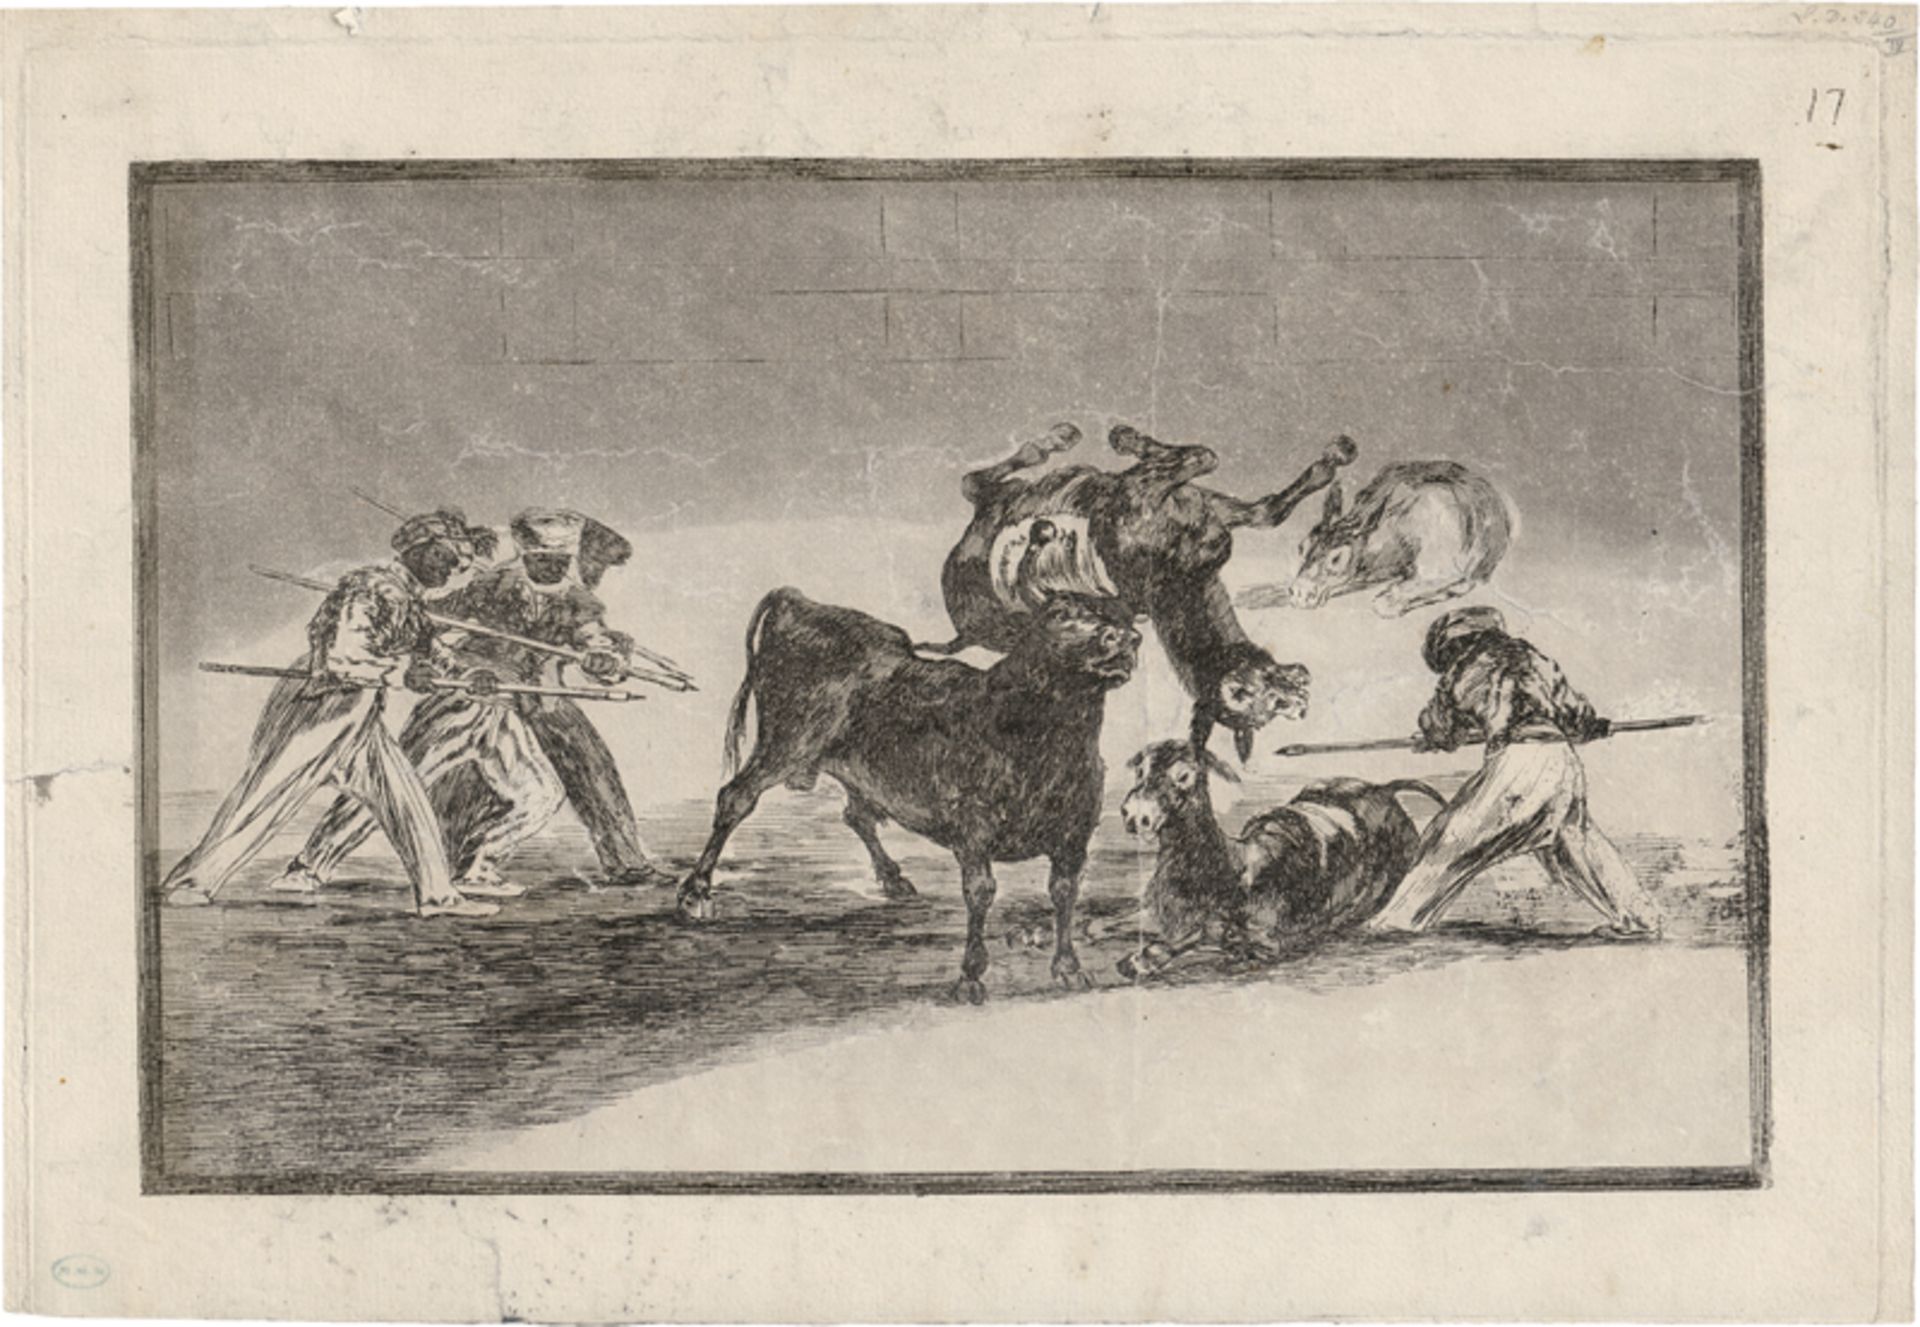 Goya, Francisco de: Palenque de los moros hecho con burros